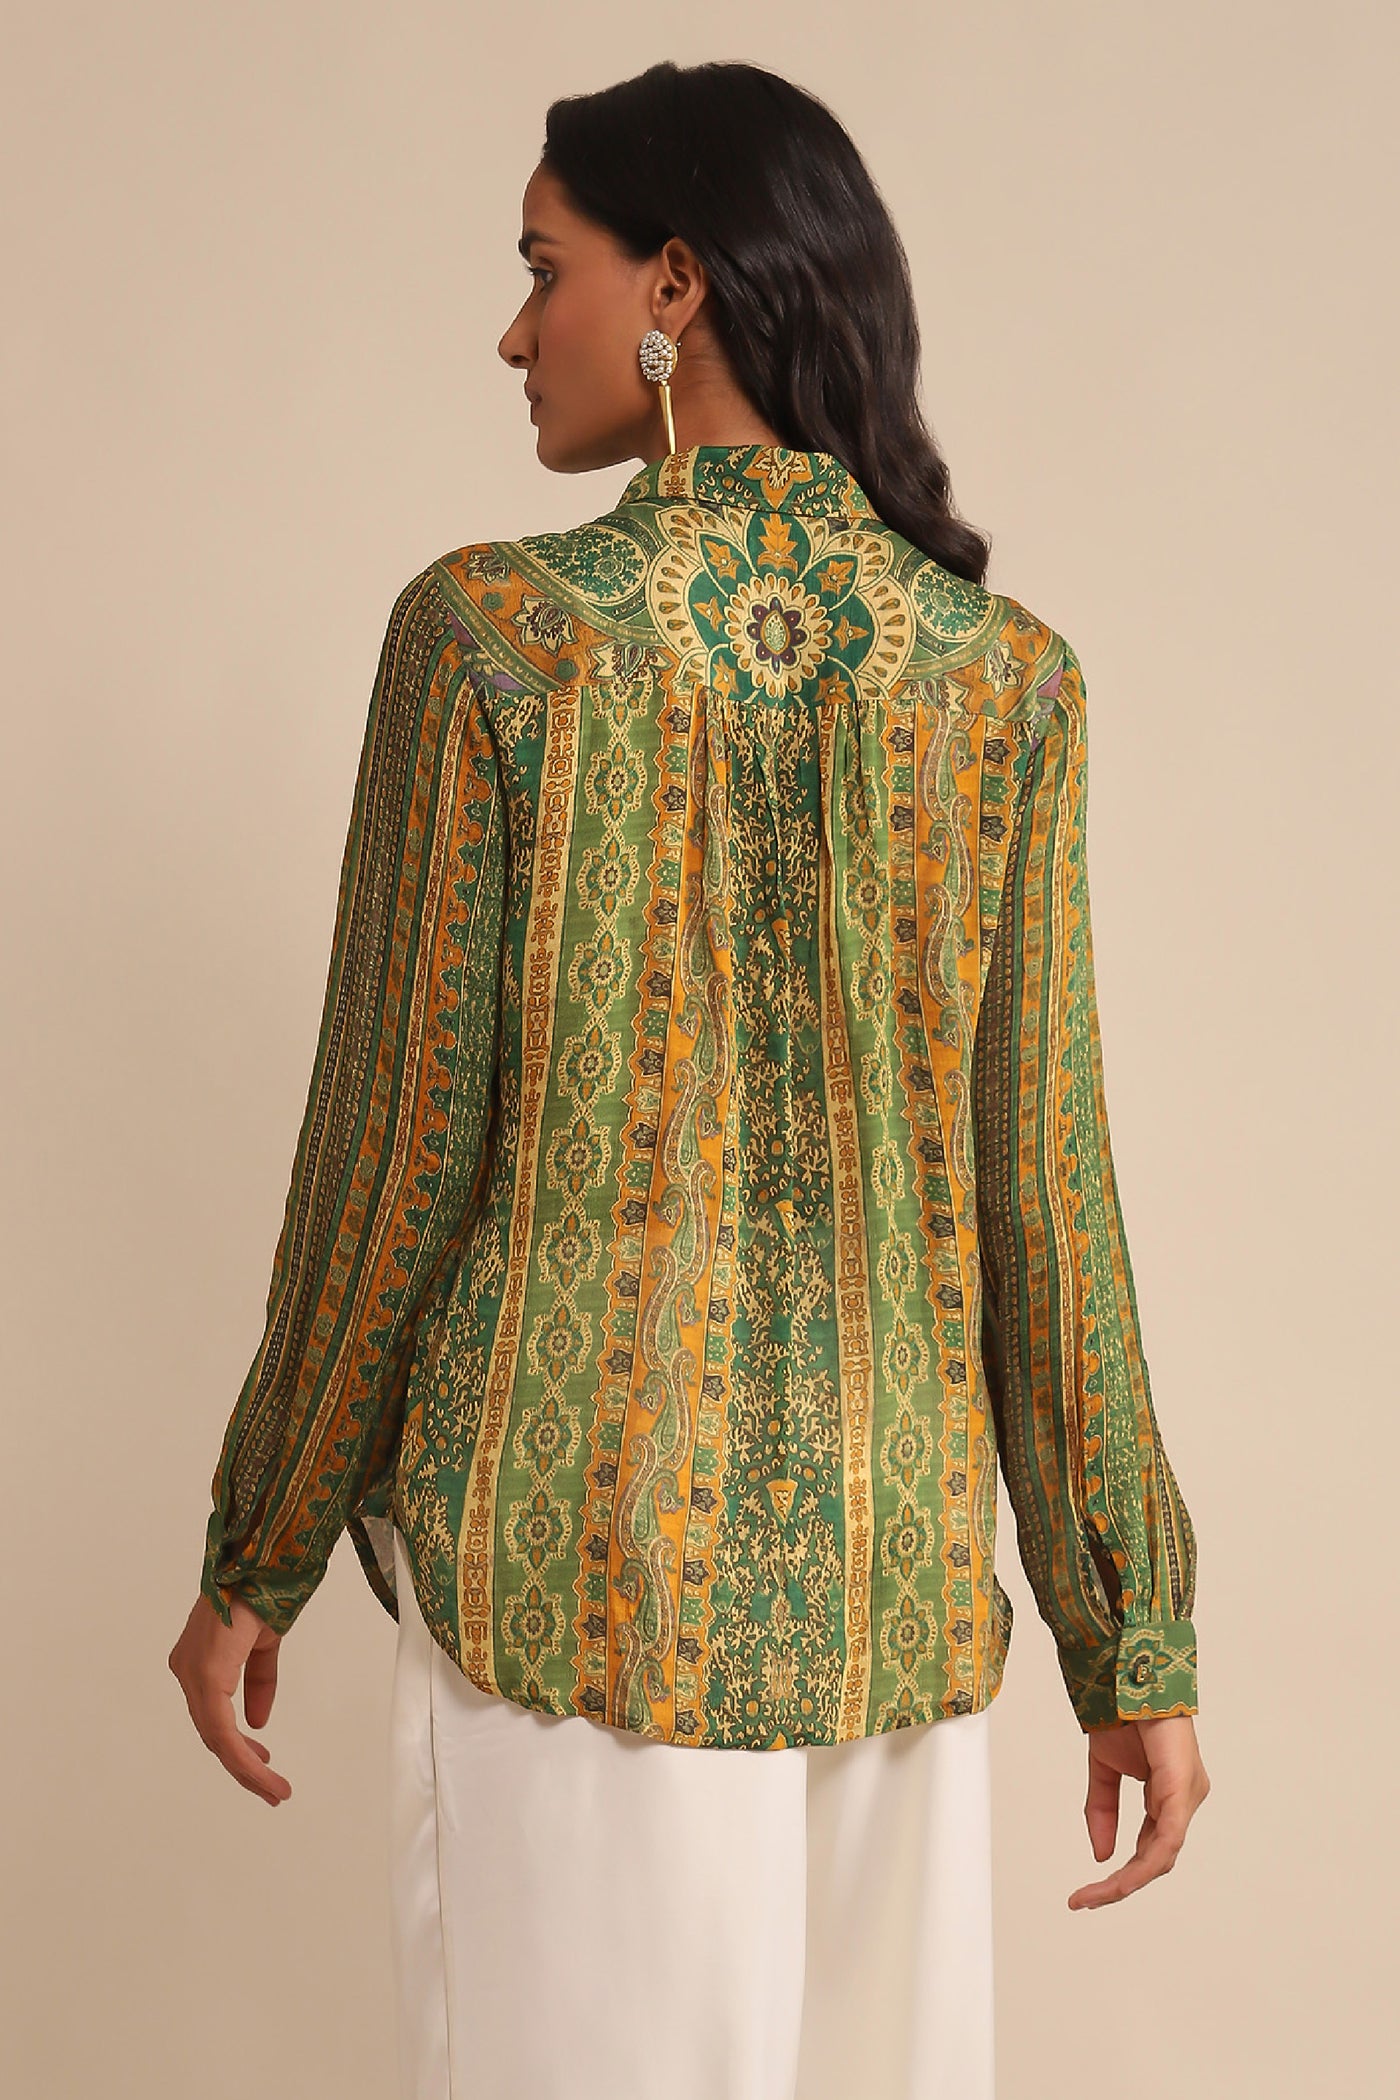 Ritu Kumar Green Printed Shirt indian designer wear online shopping melange singapore